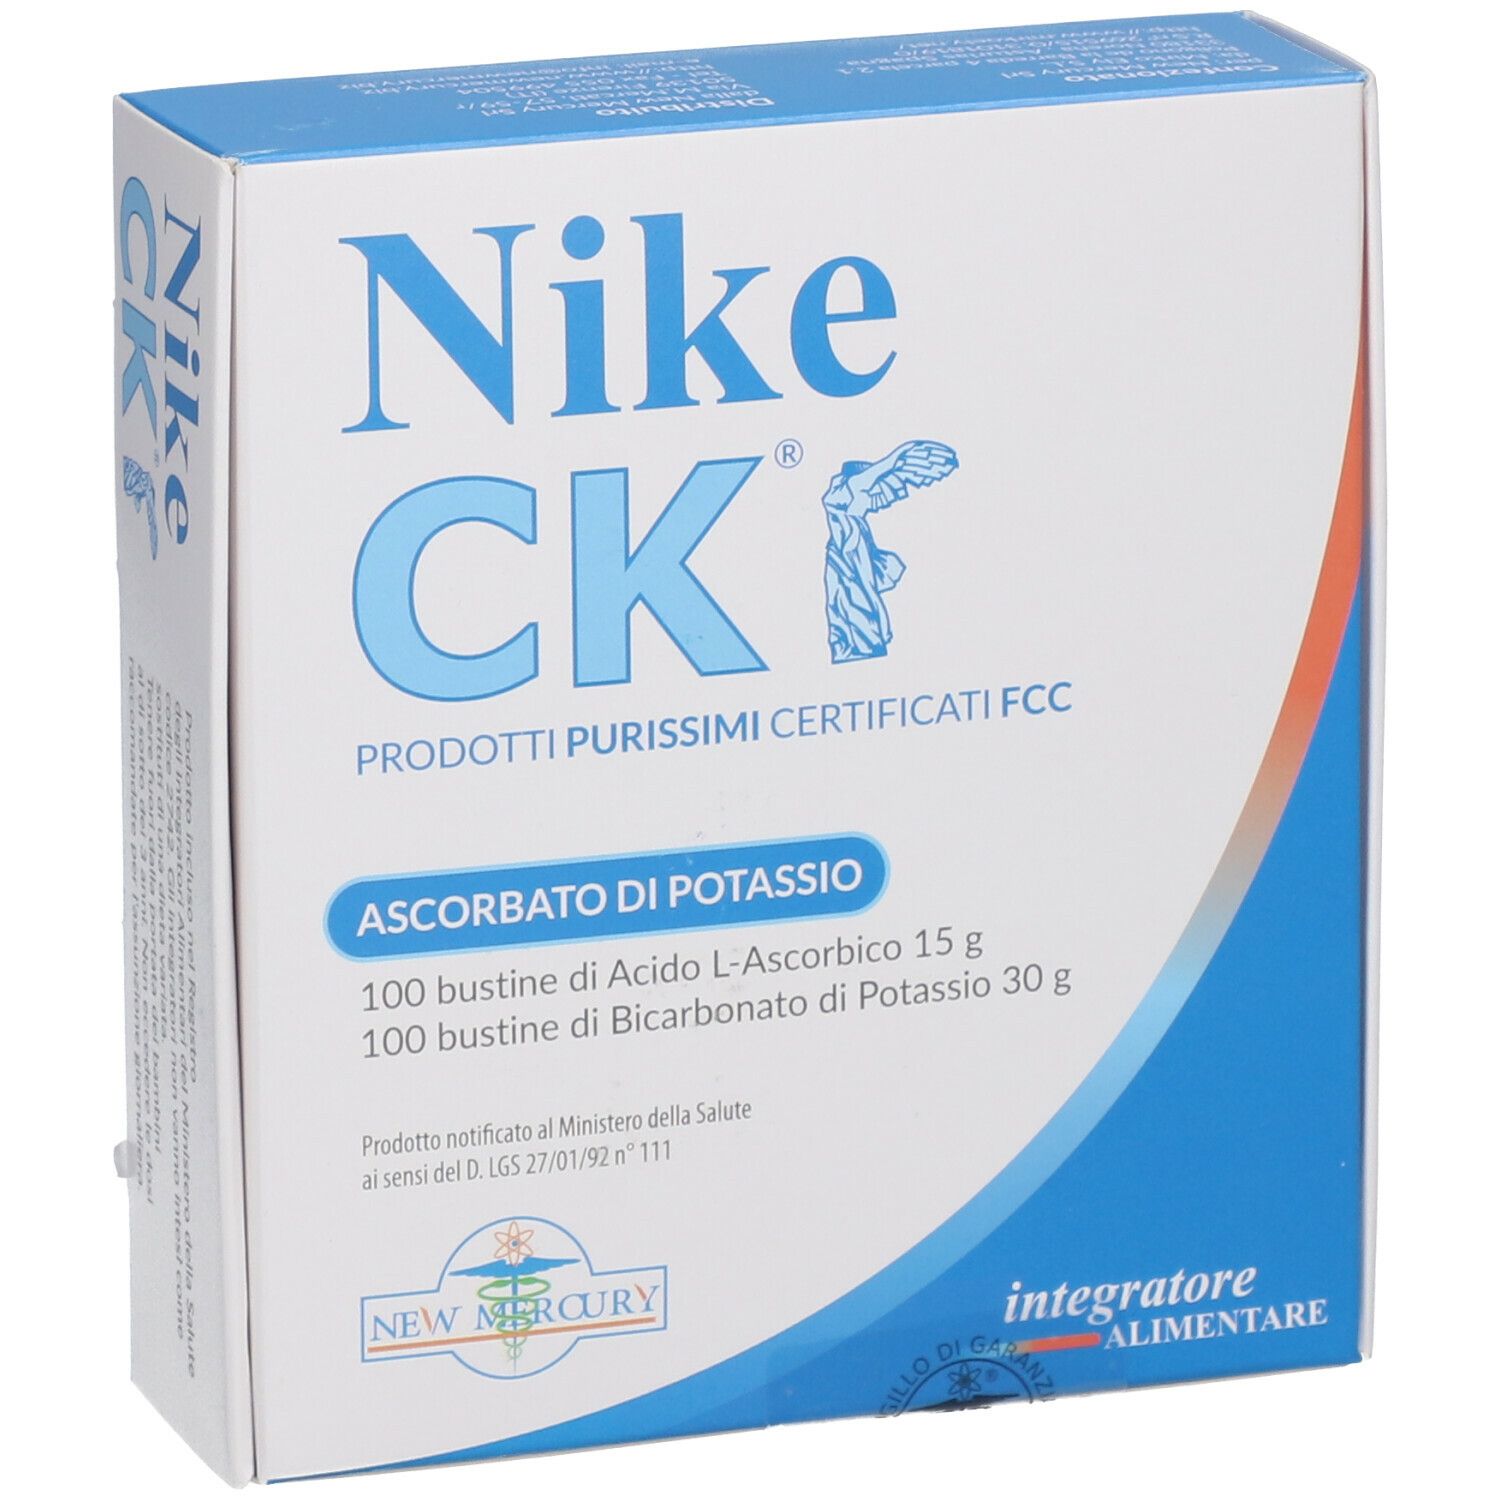 New Mercury NIKE CK ® Ascorbato di Potassio